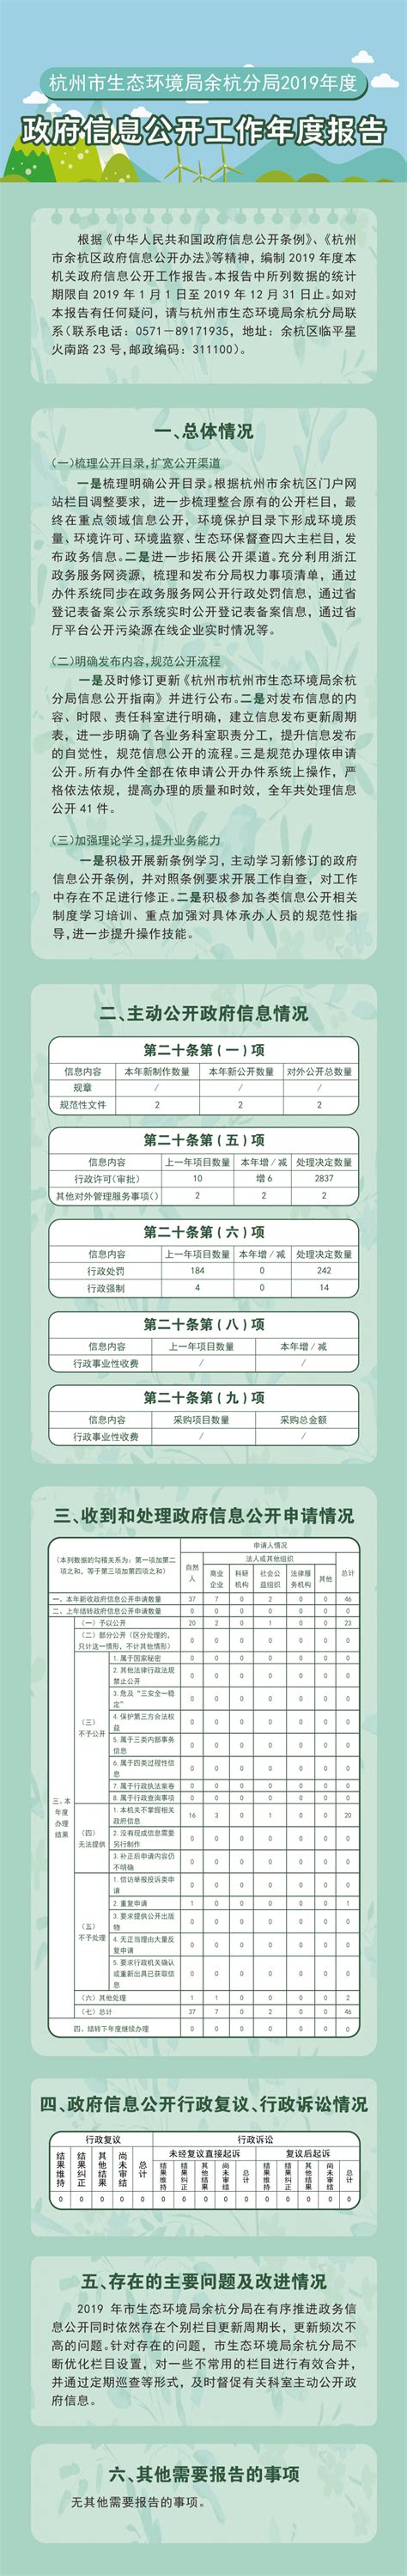 杭州市审计局2021年政府信息公开工作年度报告